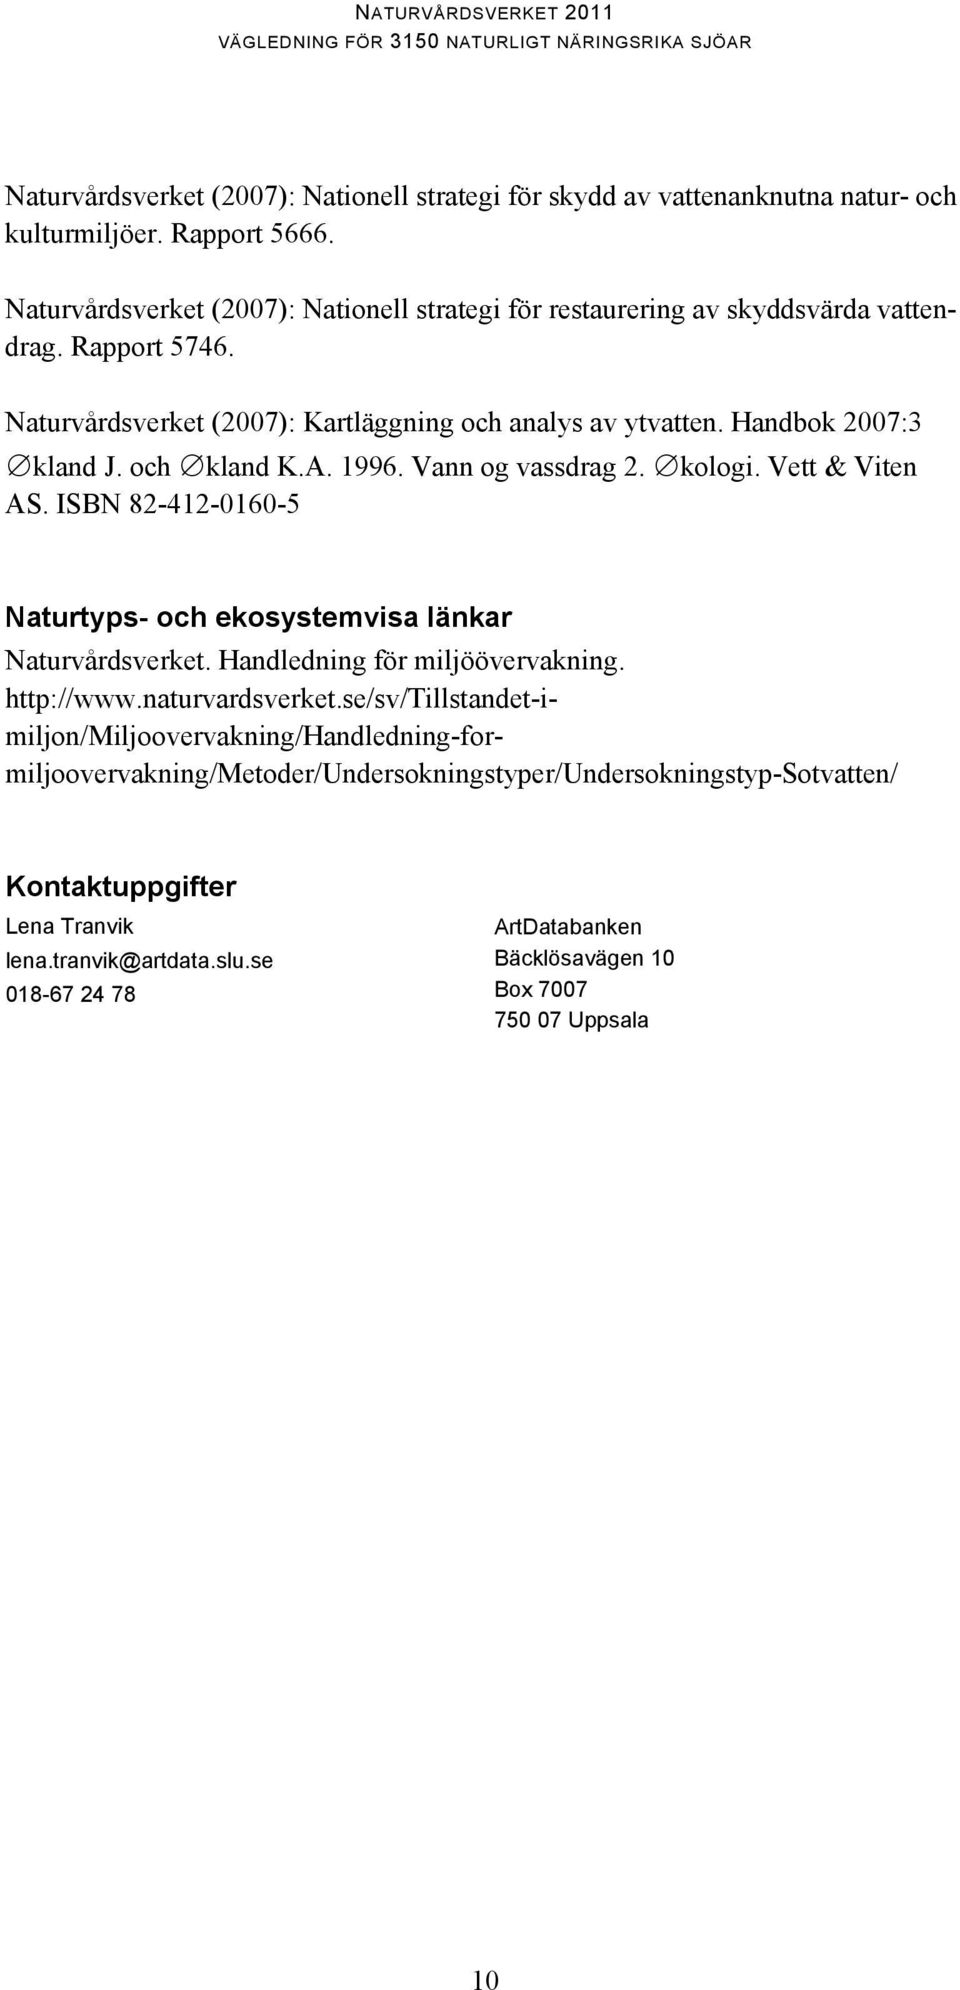 och kland K.A. 1996. Vann og vassdrag 2. kologi. Vett & Viten AS. ISBN 82-412-0160-5 Naturtyps- och ekosystemvisa länkar Naturvårdsverket. Handledning för miljöövervakning. http://www.